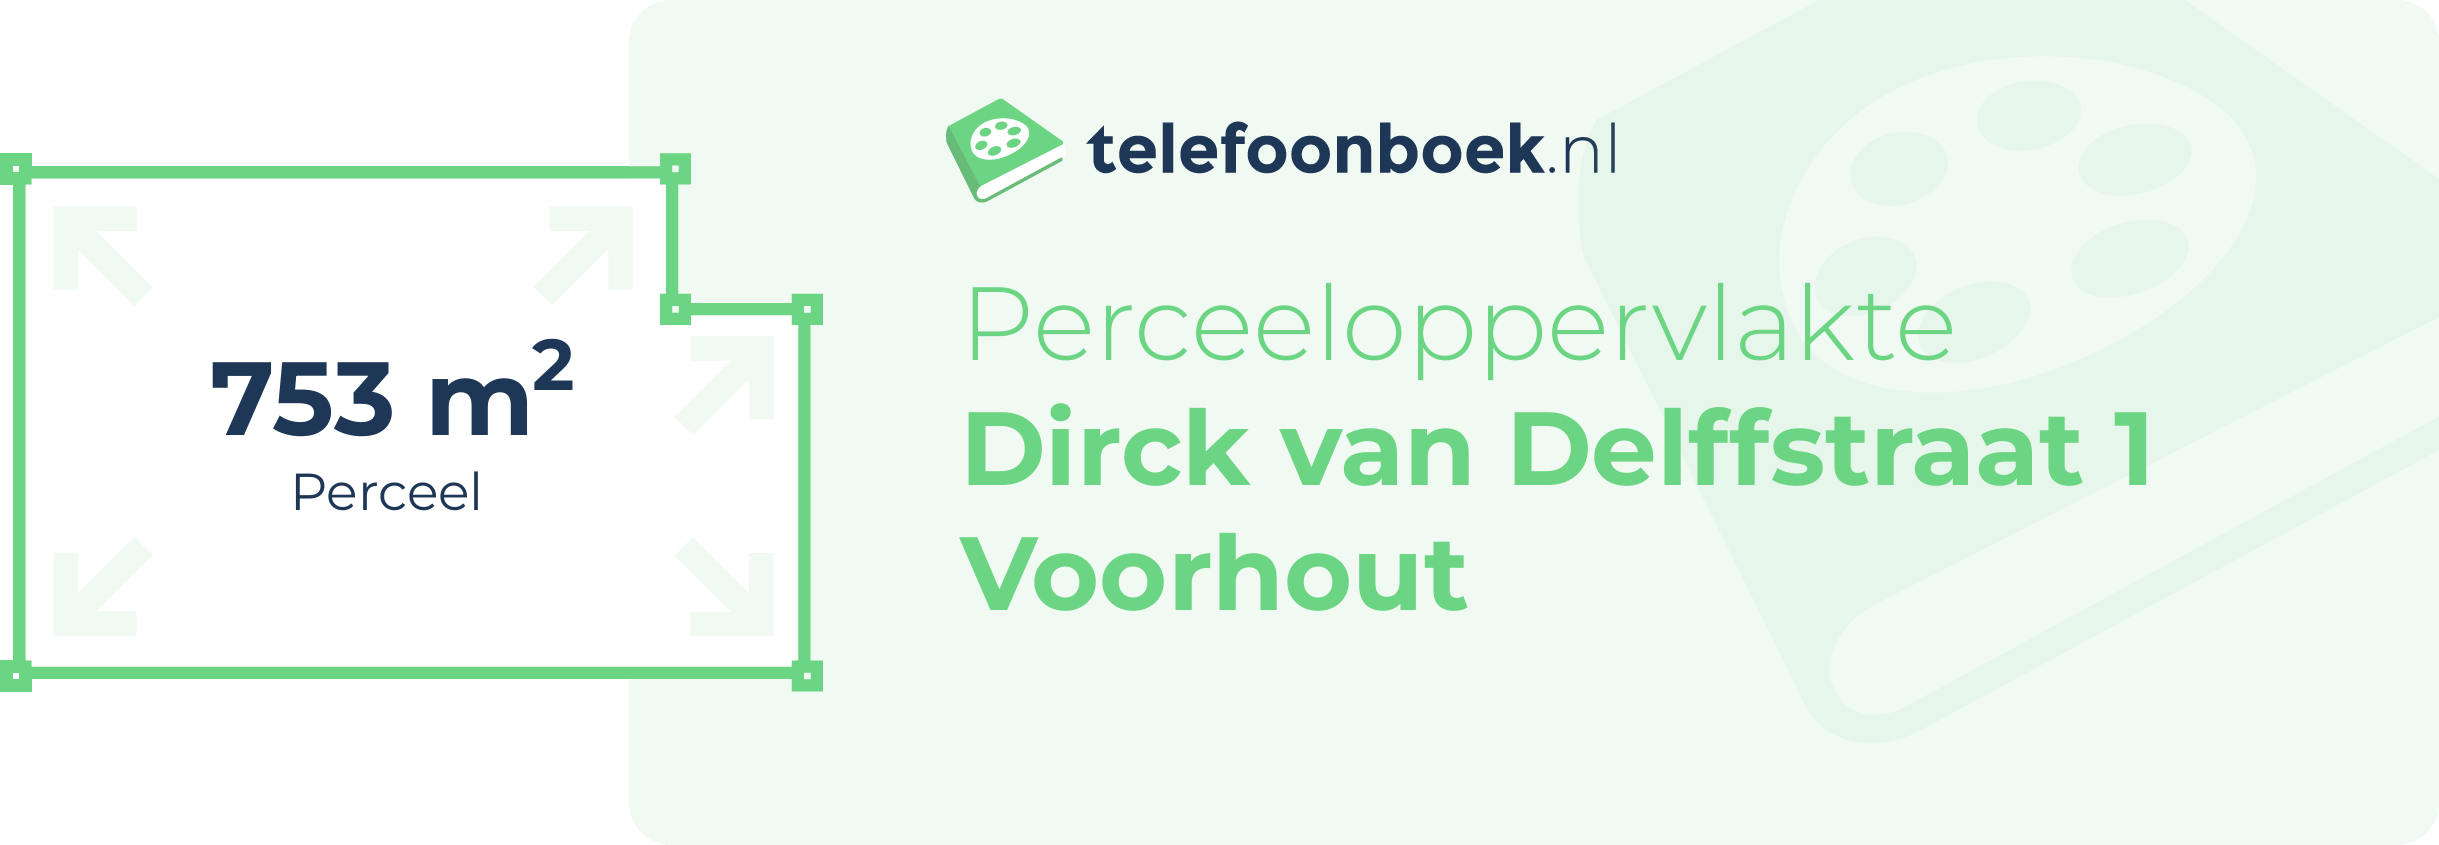 Perceeloppervlakte Dirck Van Delffstraat 1 Voorhout